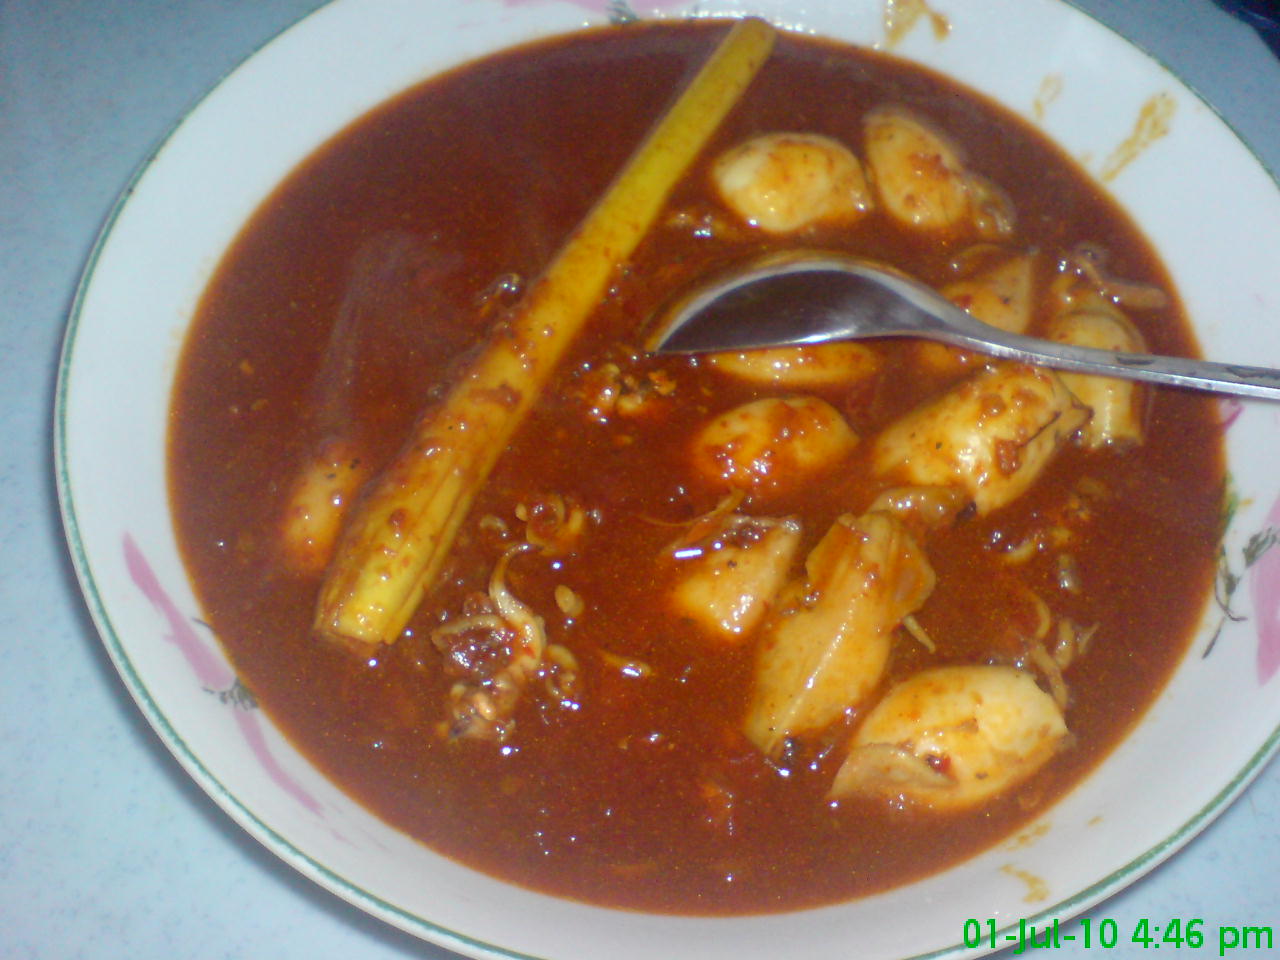 MAS'S FAMILY: Ayam masak merah dan sotong masak hitam